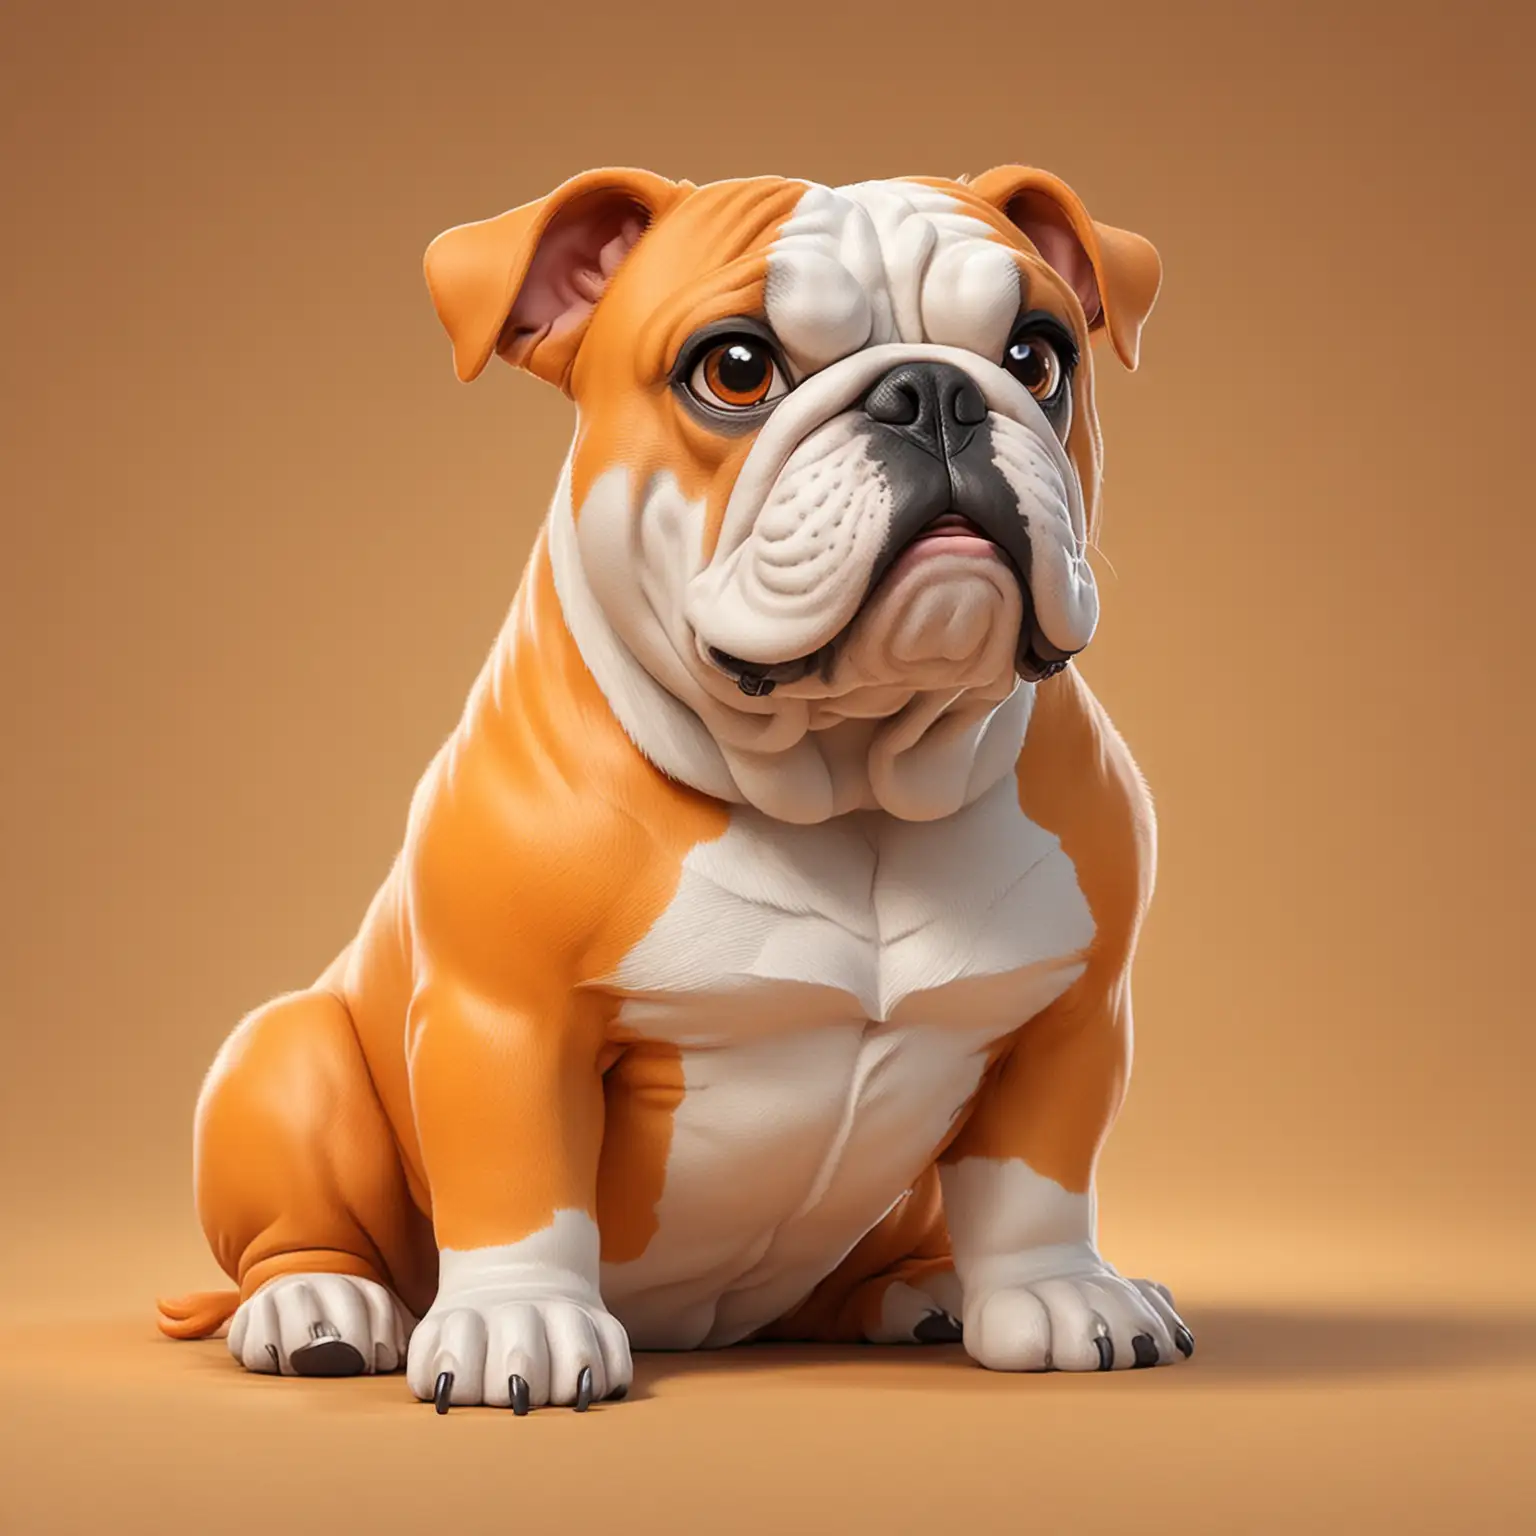 Cartoon-Bulldog-Sitting-in-Playful-Orange-Pose